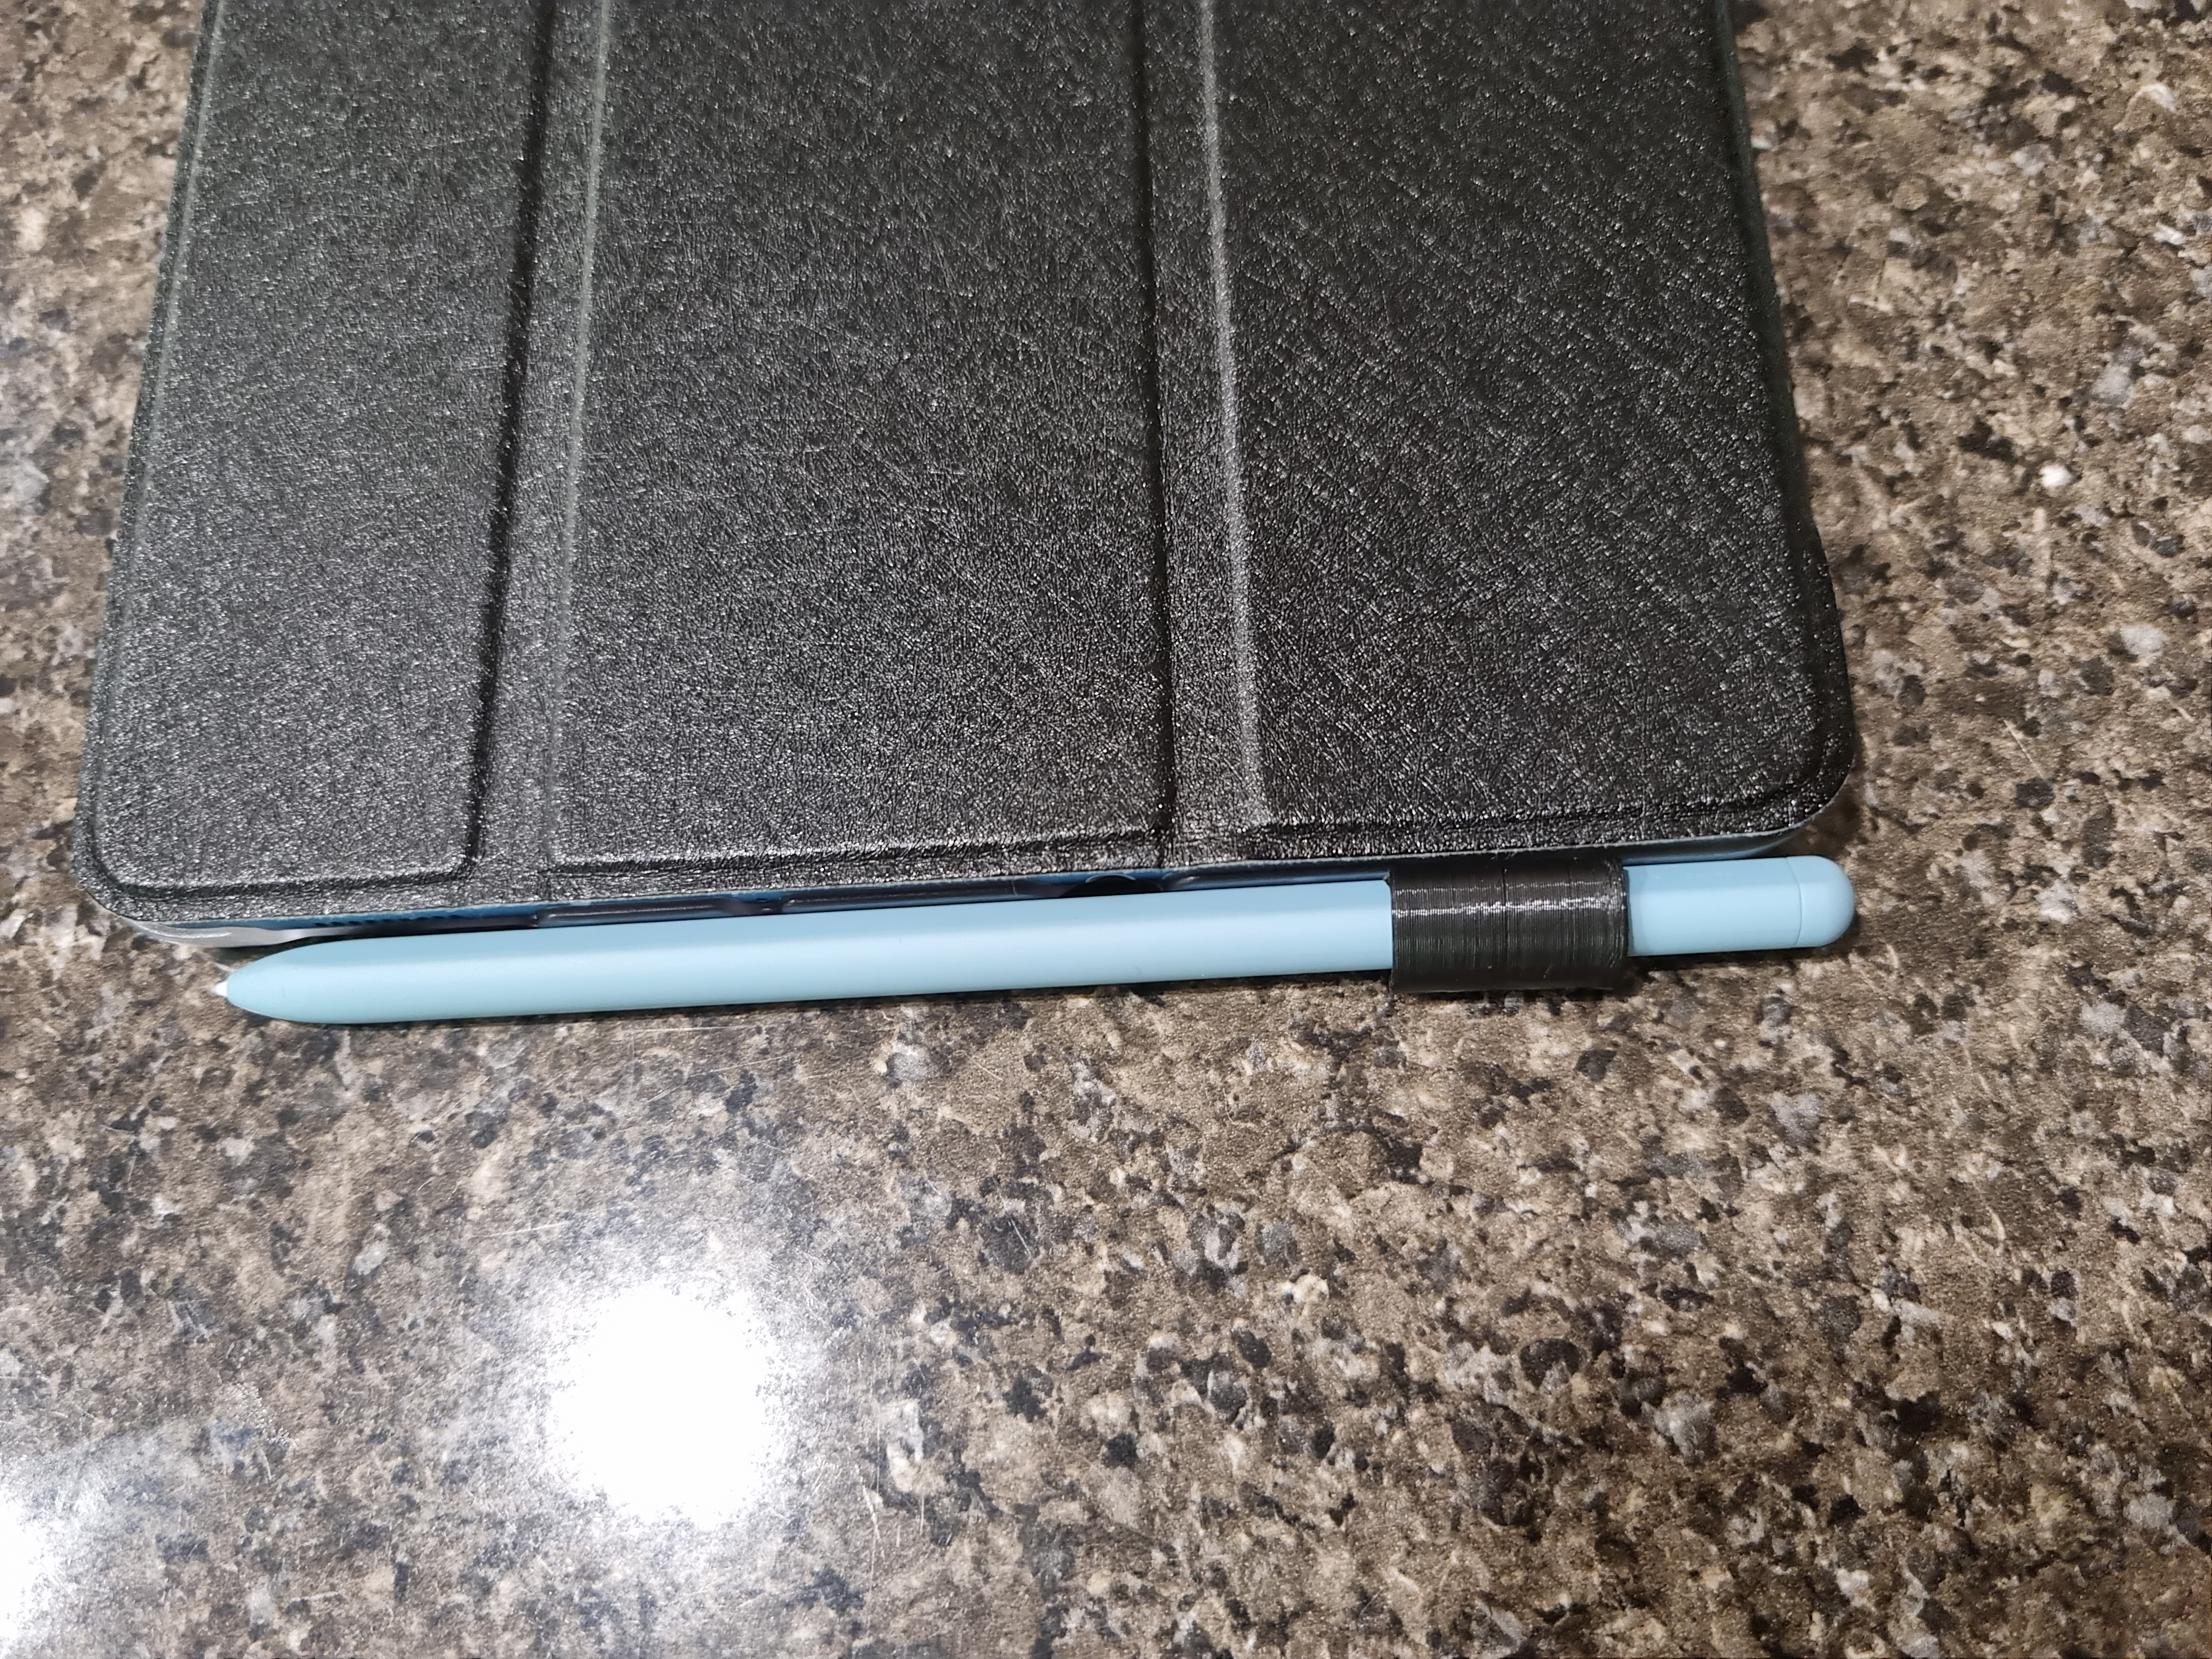 S-Pen Holder for Samsung stylus